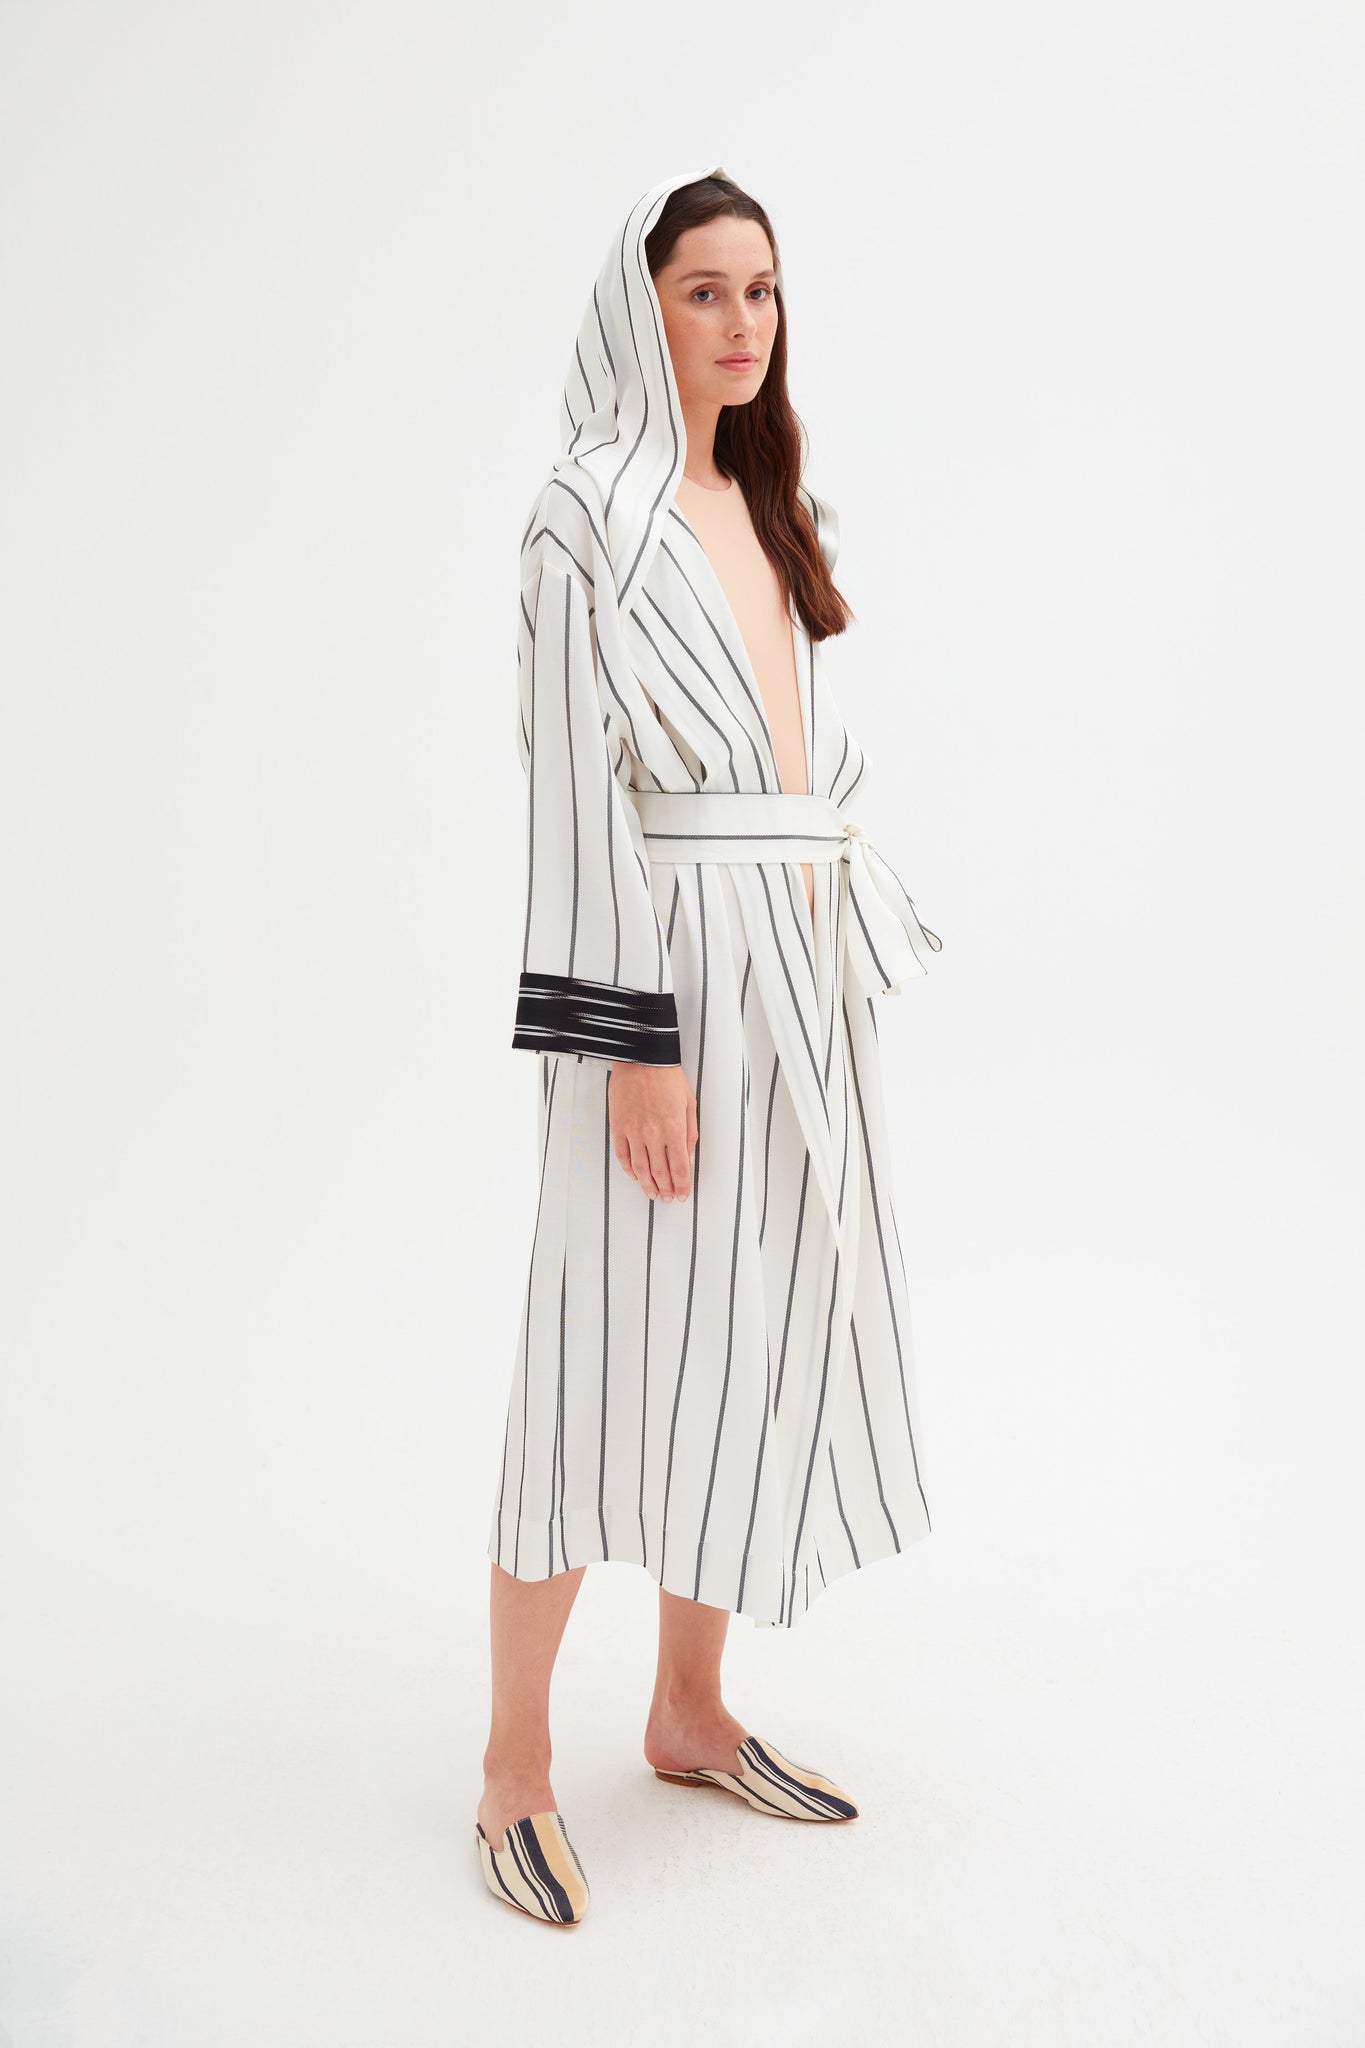 Hooded Black and White Striped Kimono